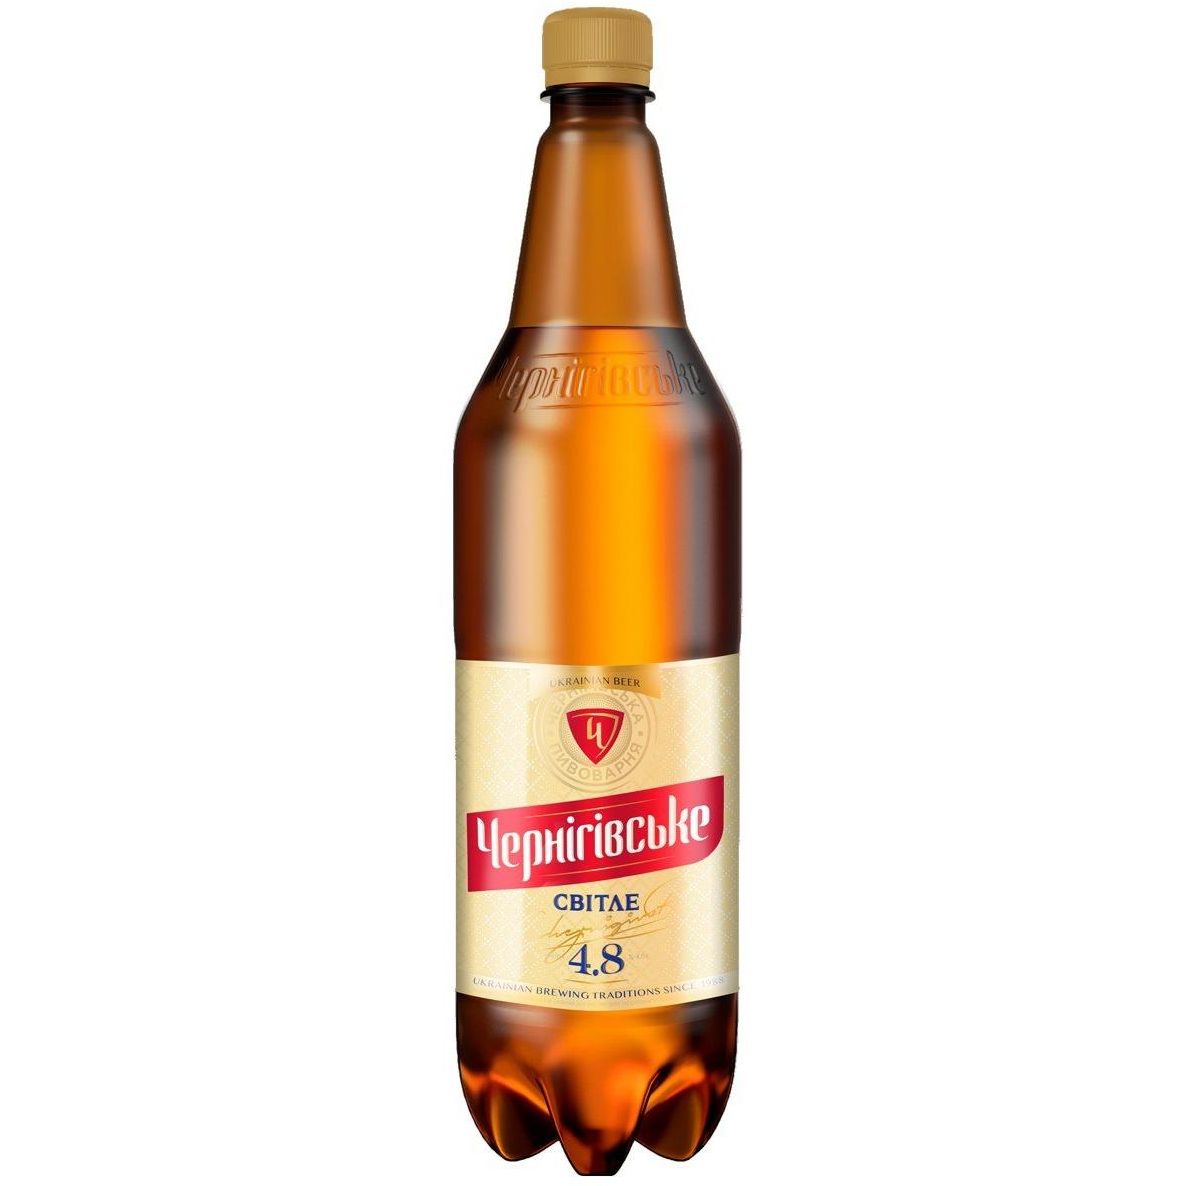 Пиво Чернігівське, светлое, фильтрованное, 4.6% 1.15 л - фото 1